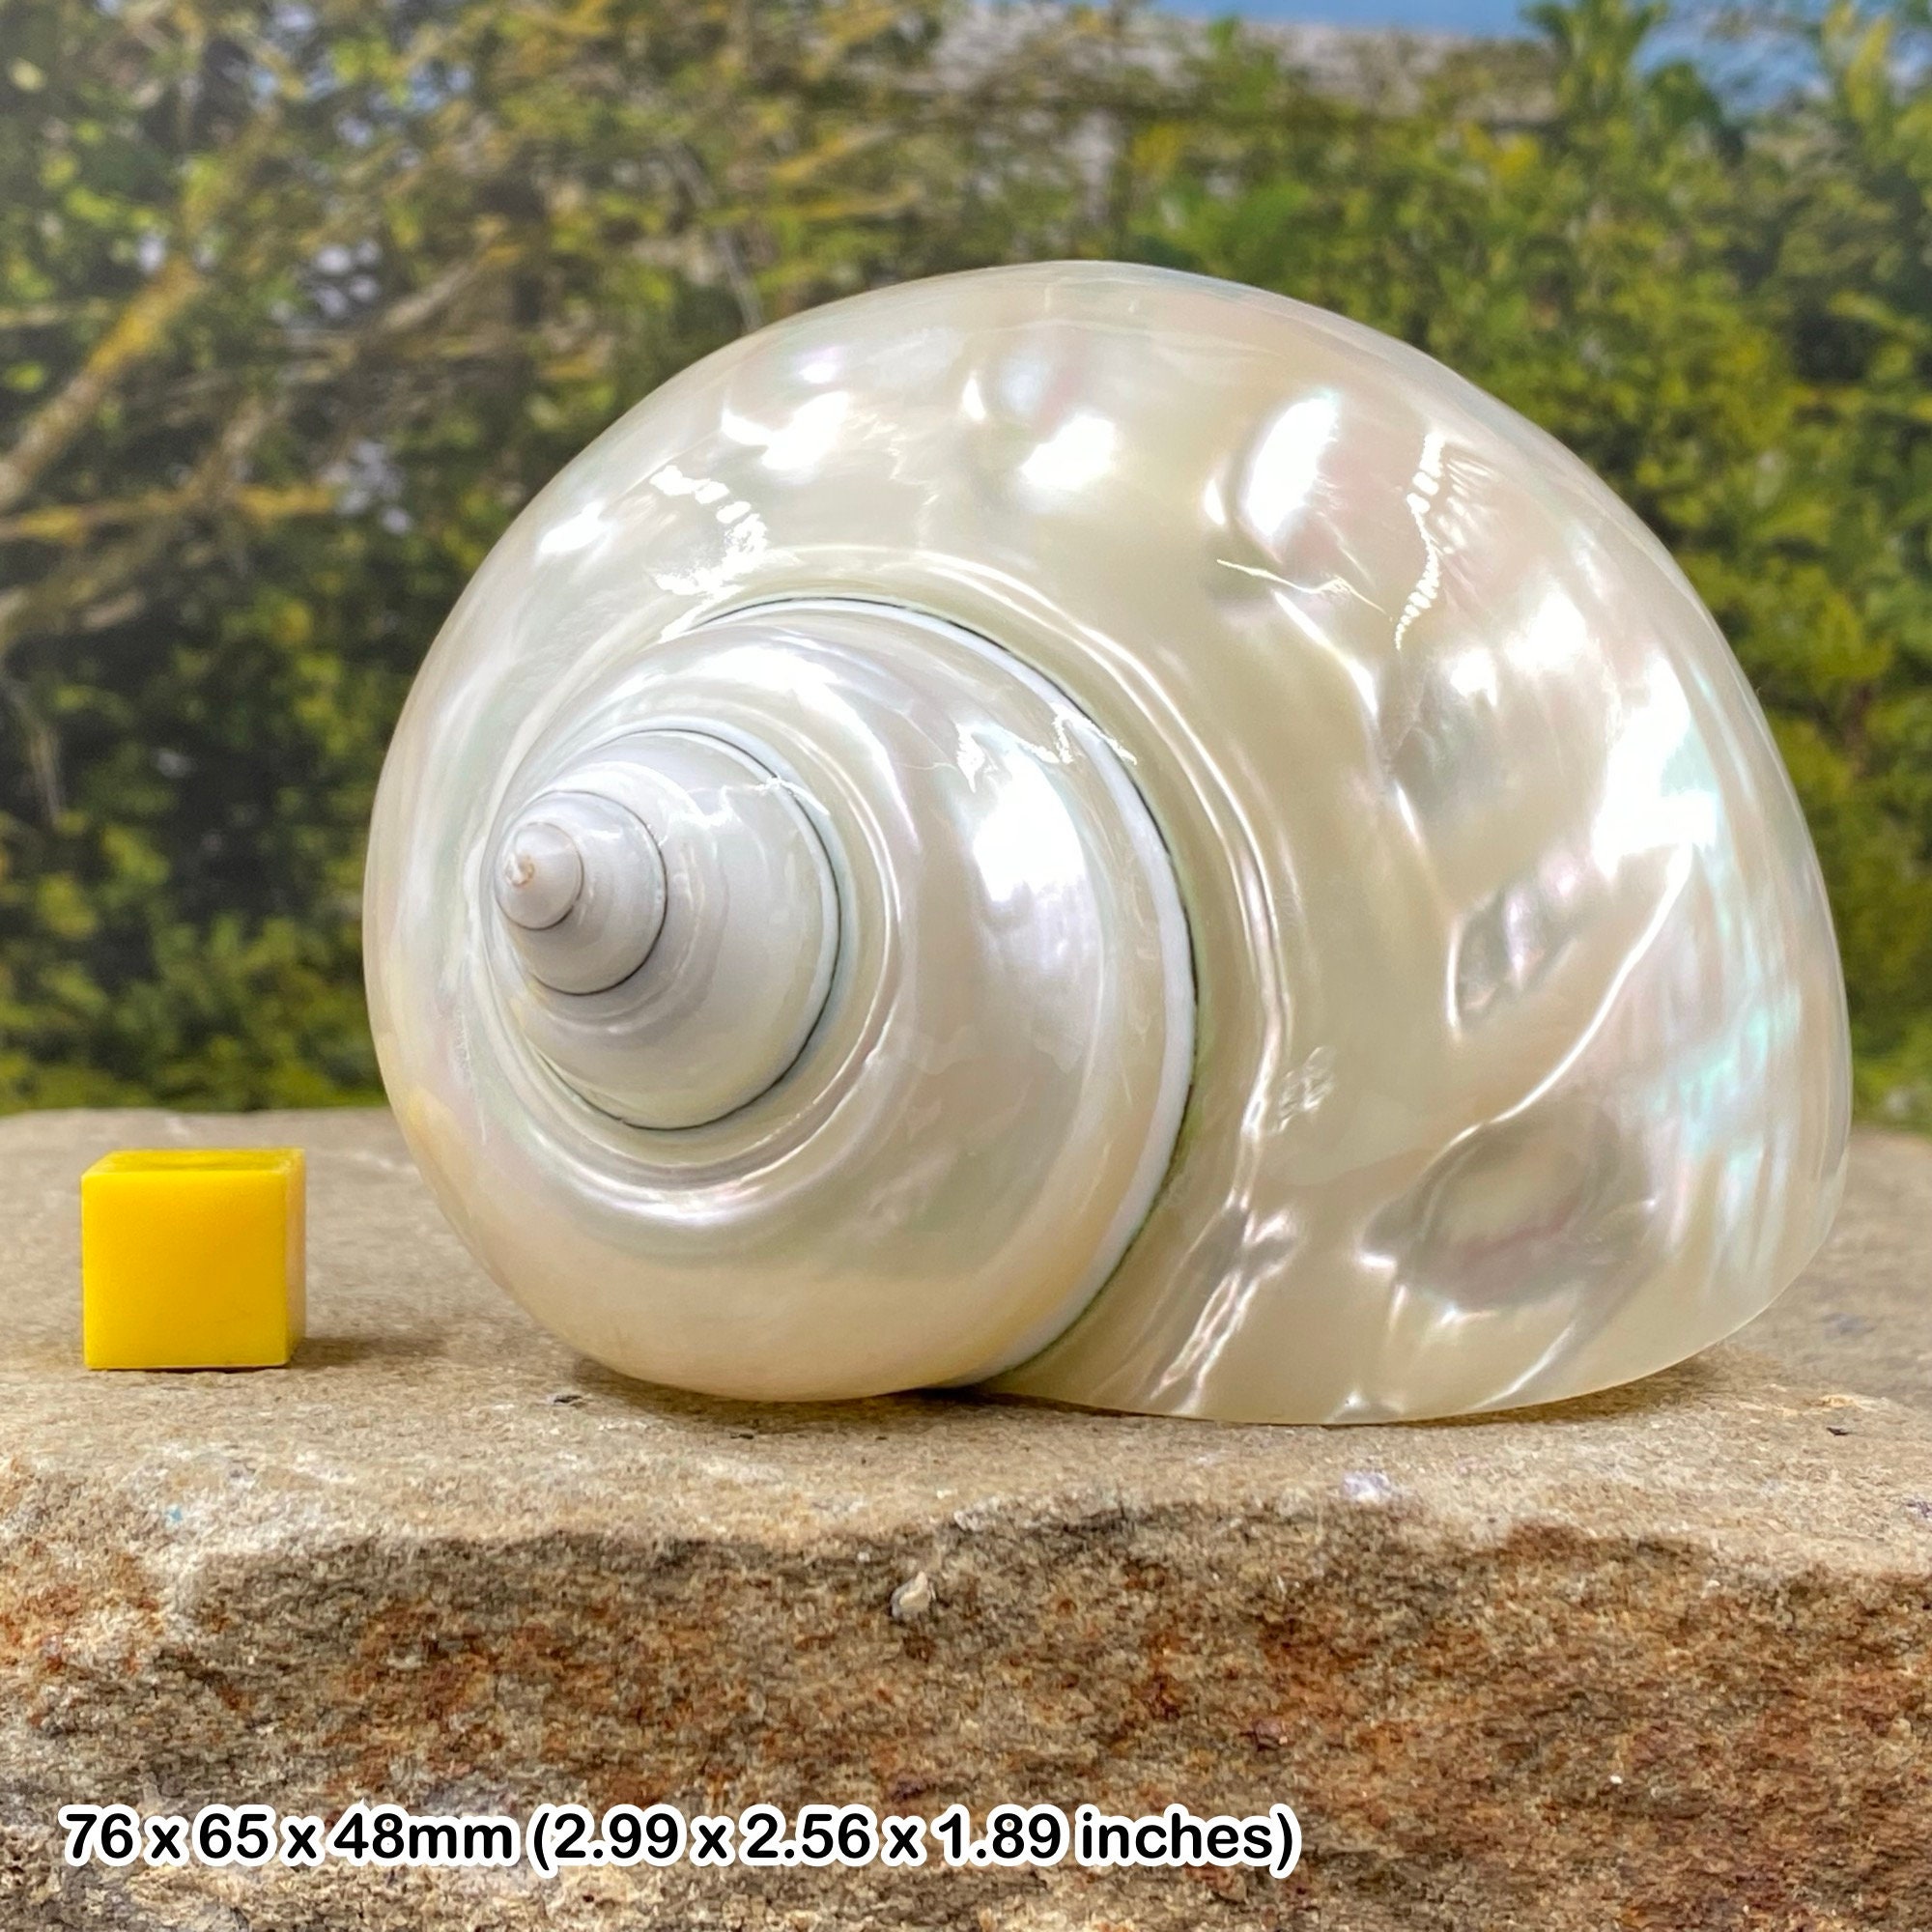 Turbo Stenogyrus Shells-Green Turbo Shells-Shells for  Crafting-Decor-Shells-Sea Shells-Turbo Shells-Wedding-Small Shells-FREE  SHIPPING!